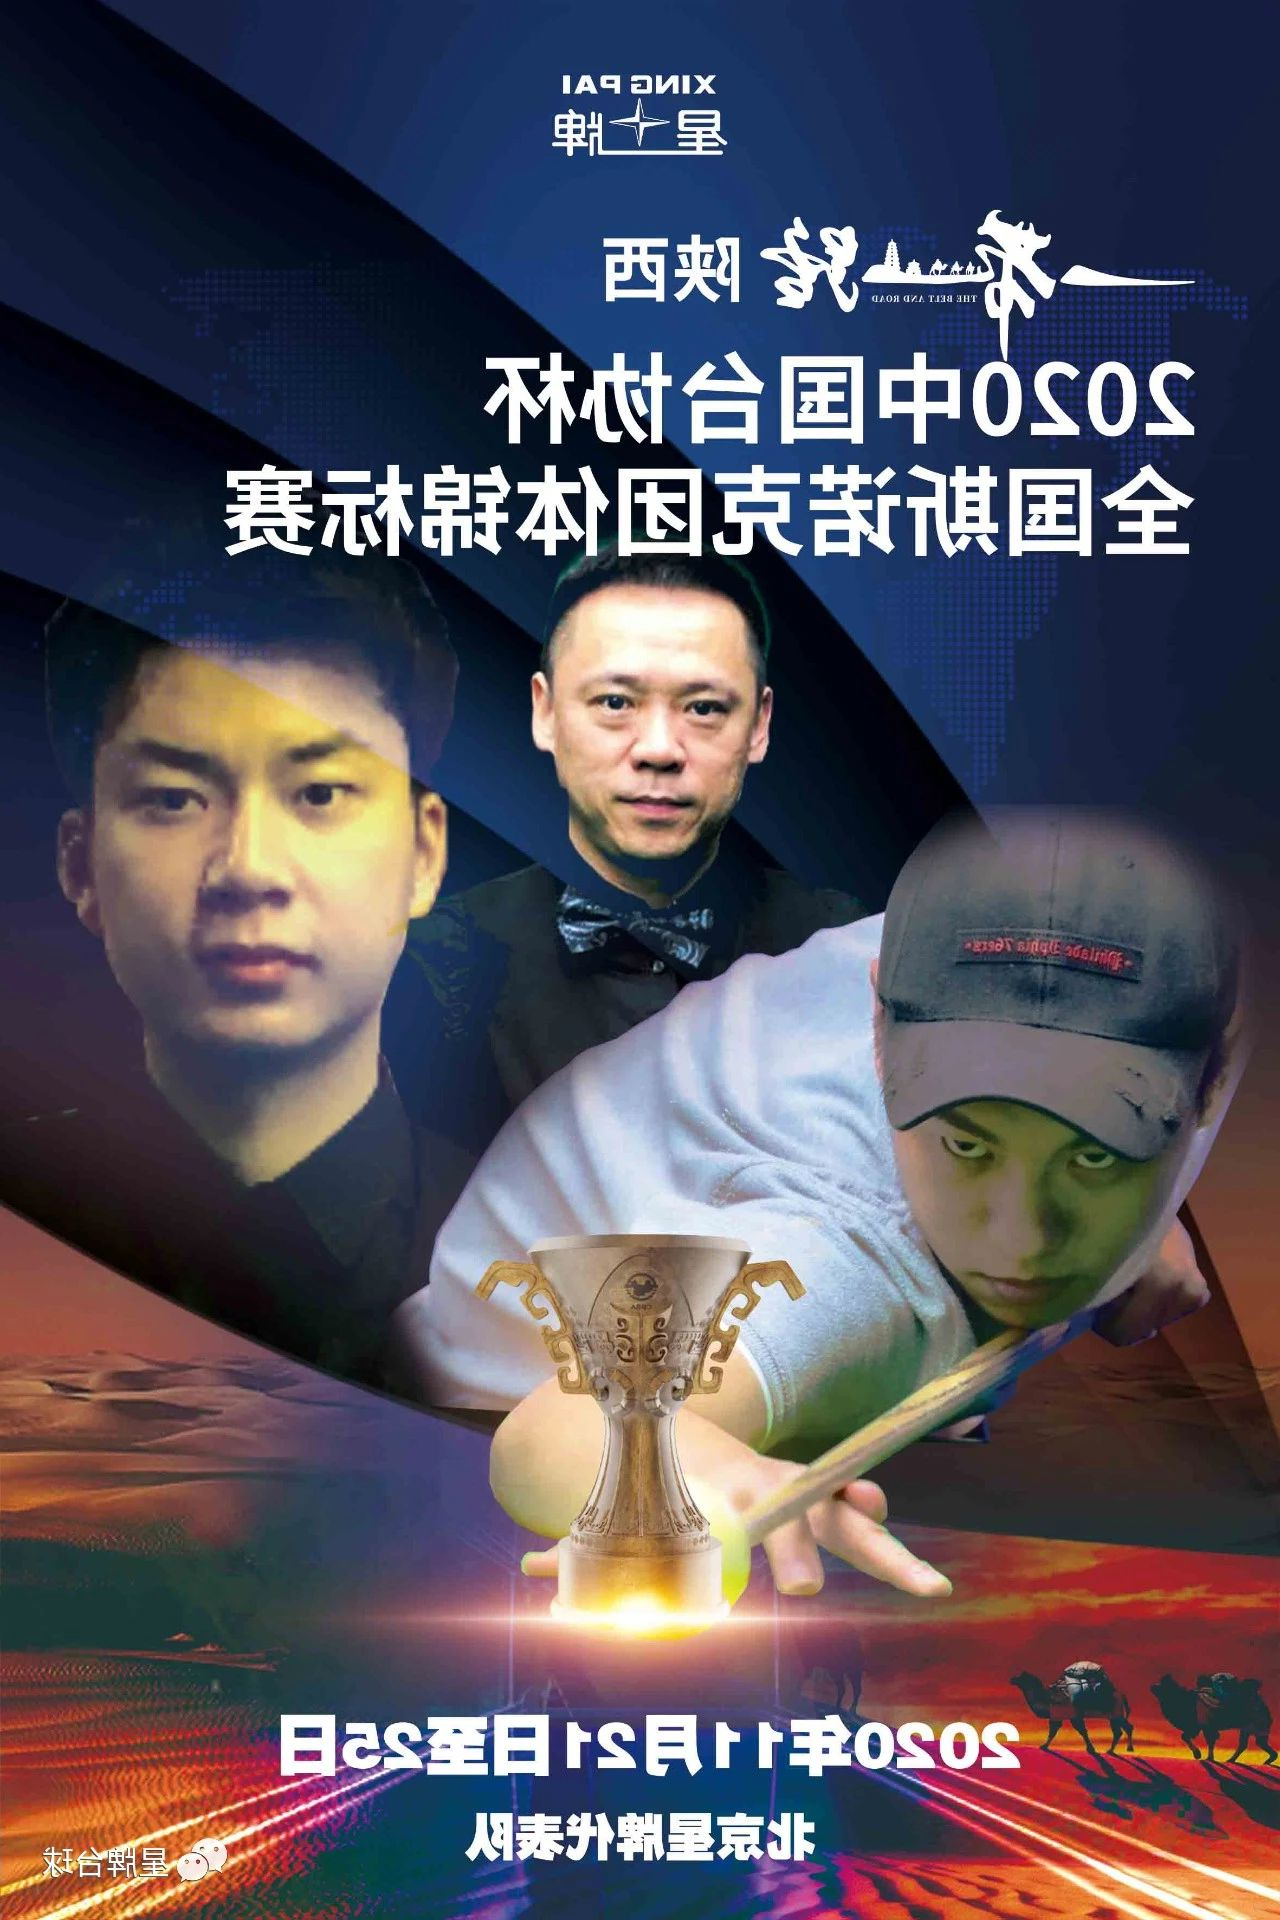 北京kok娱乐平台
代表队出征全国斯诺克团体锦标赛